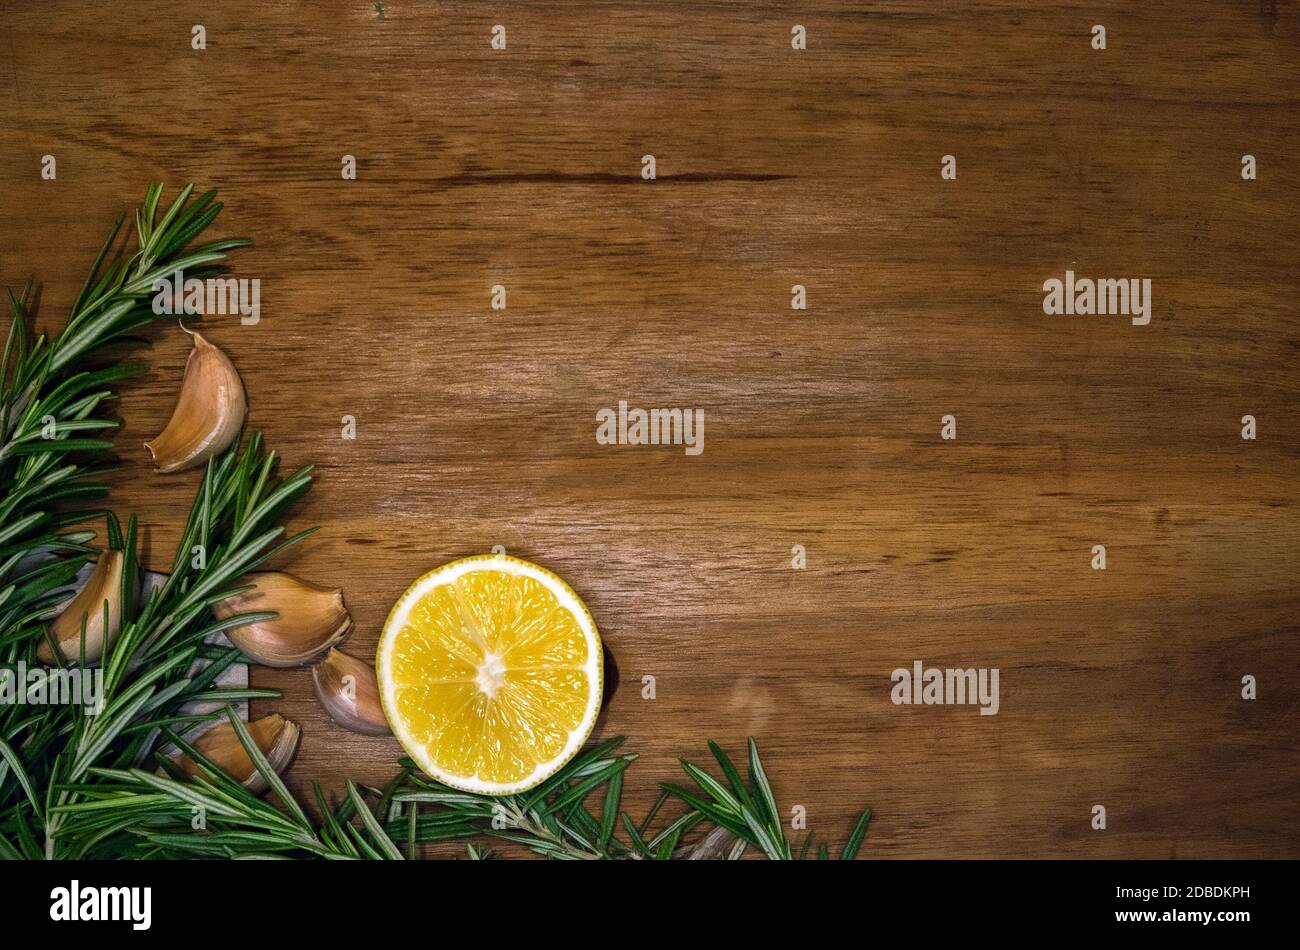 Rametti di rosmarino fresco, spicchi d'aglio e mezzo limone su una tavola di legno scuro, cartolina o modello di invito Foto Stock